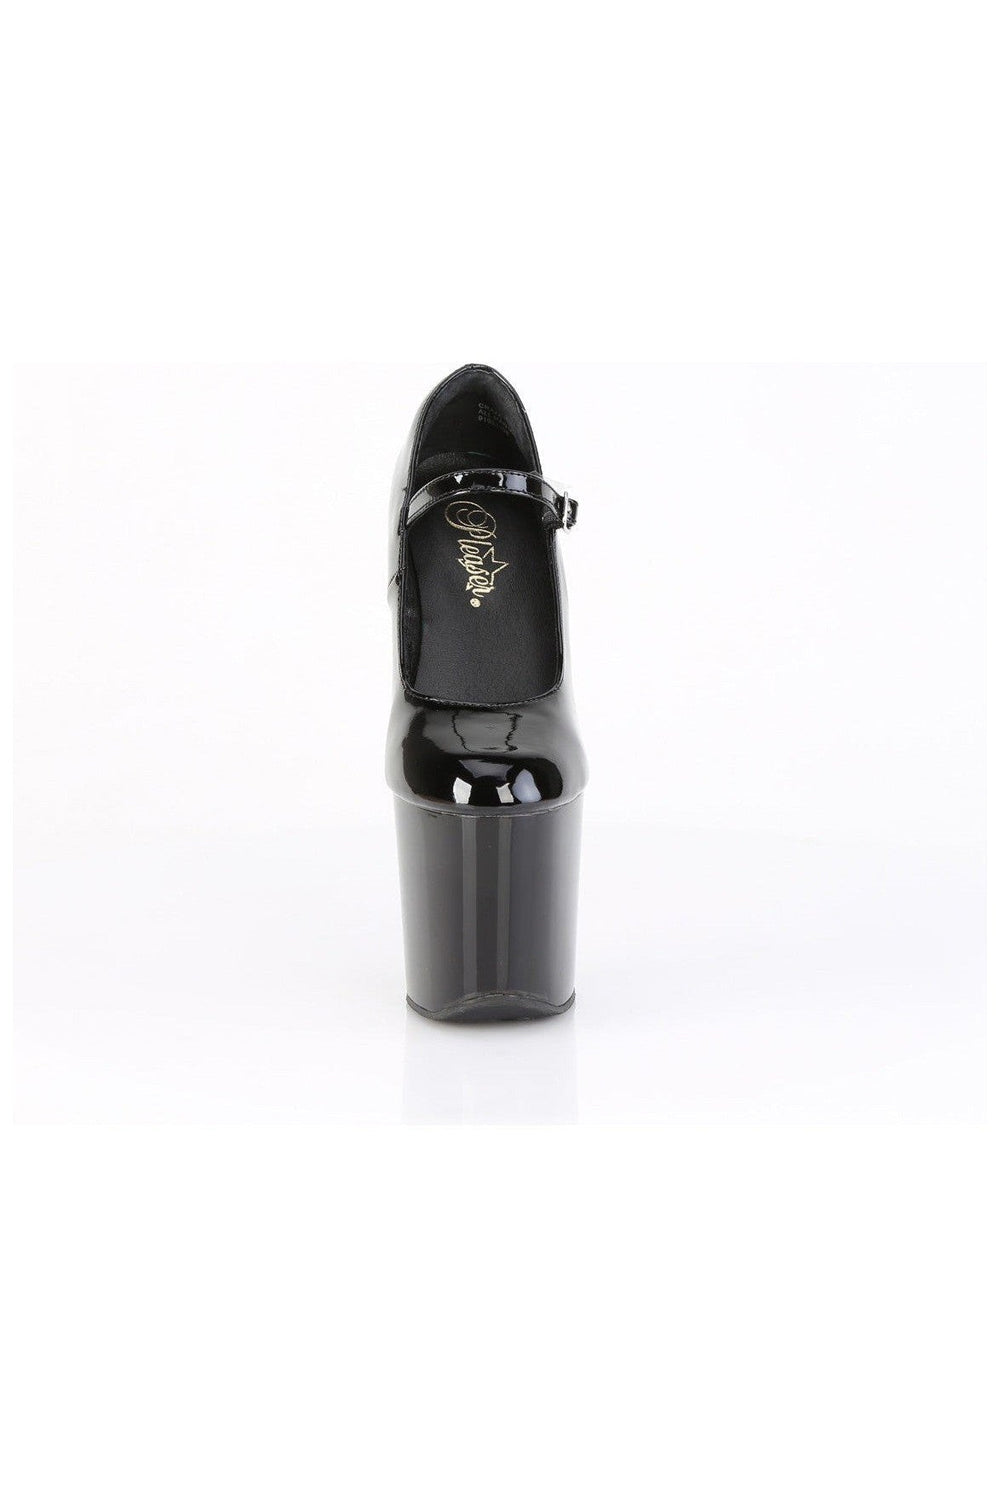 CRAZE-880 Black Patent Pump-Pumps- Stripper Shoes at SEXYSHOES.COM